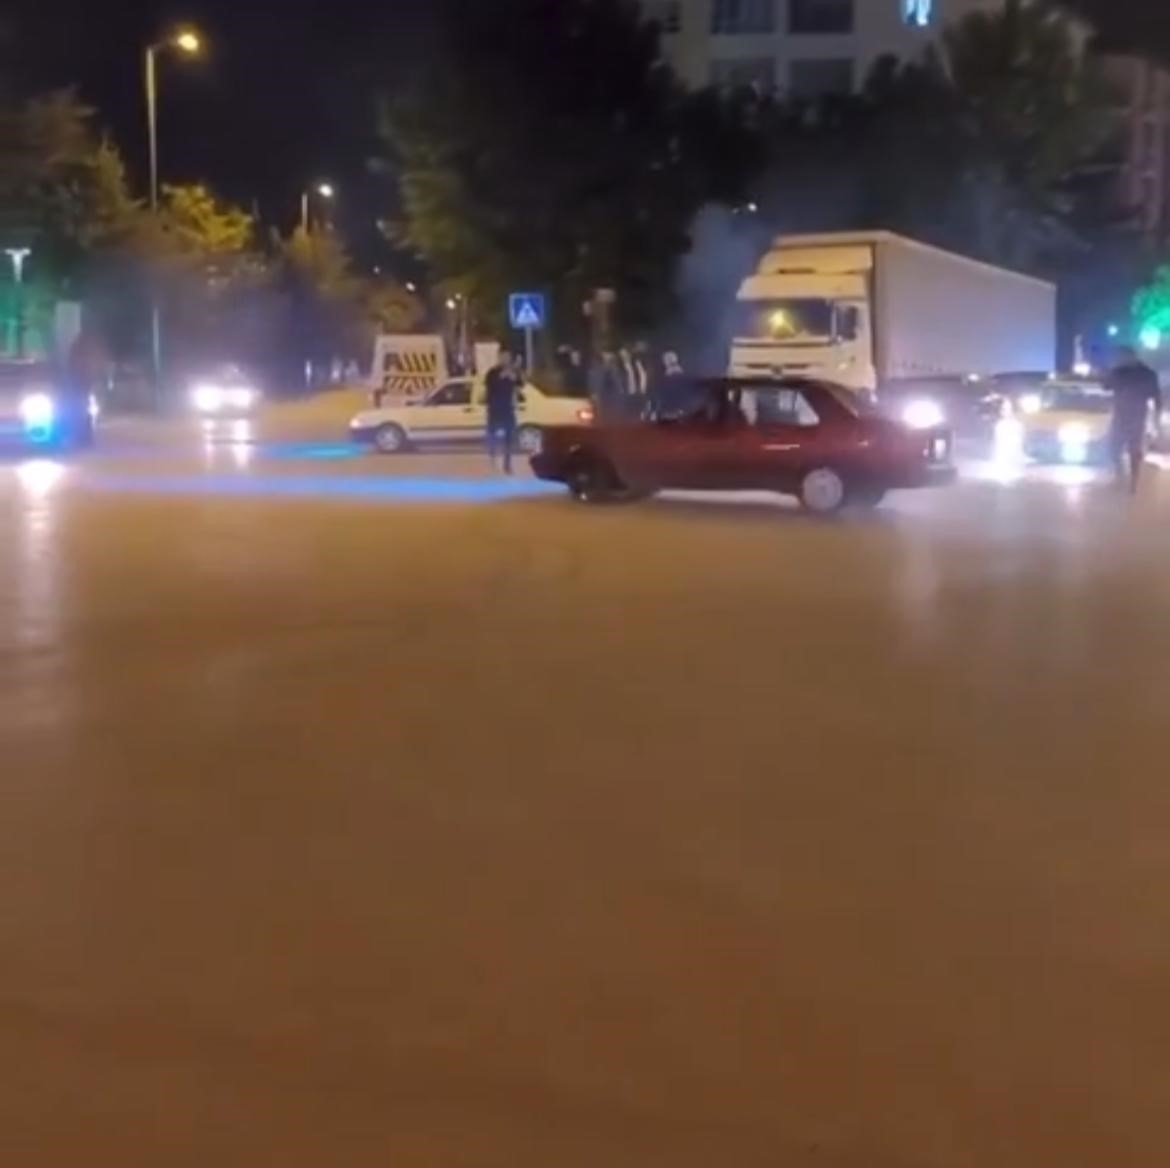 Bursa’daki trafik magandası kamerada... Kimseye aldırış etmeden drift attı